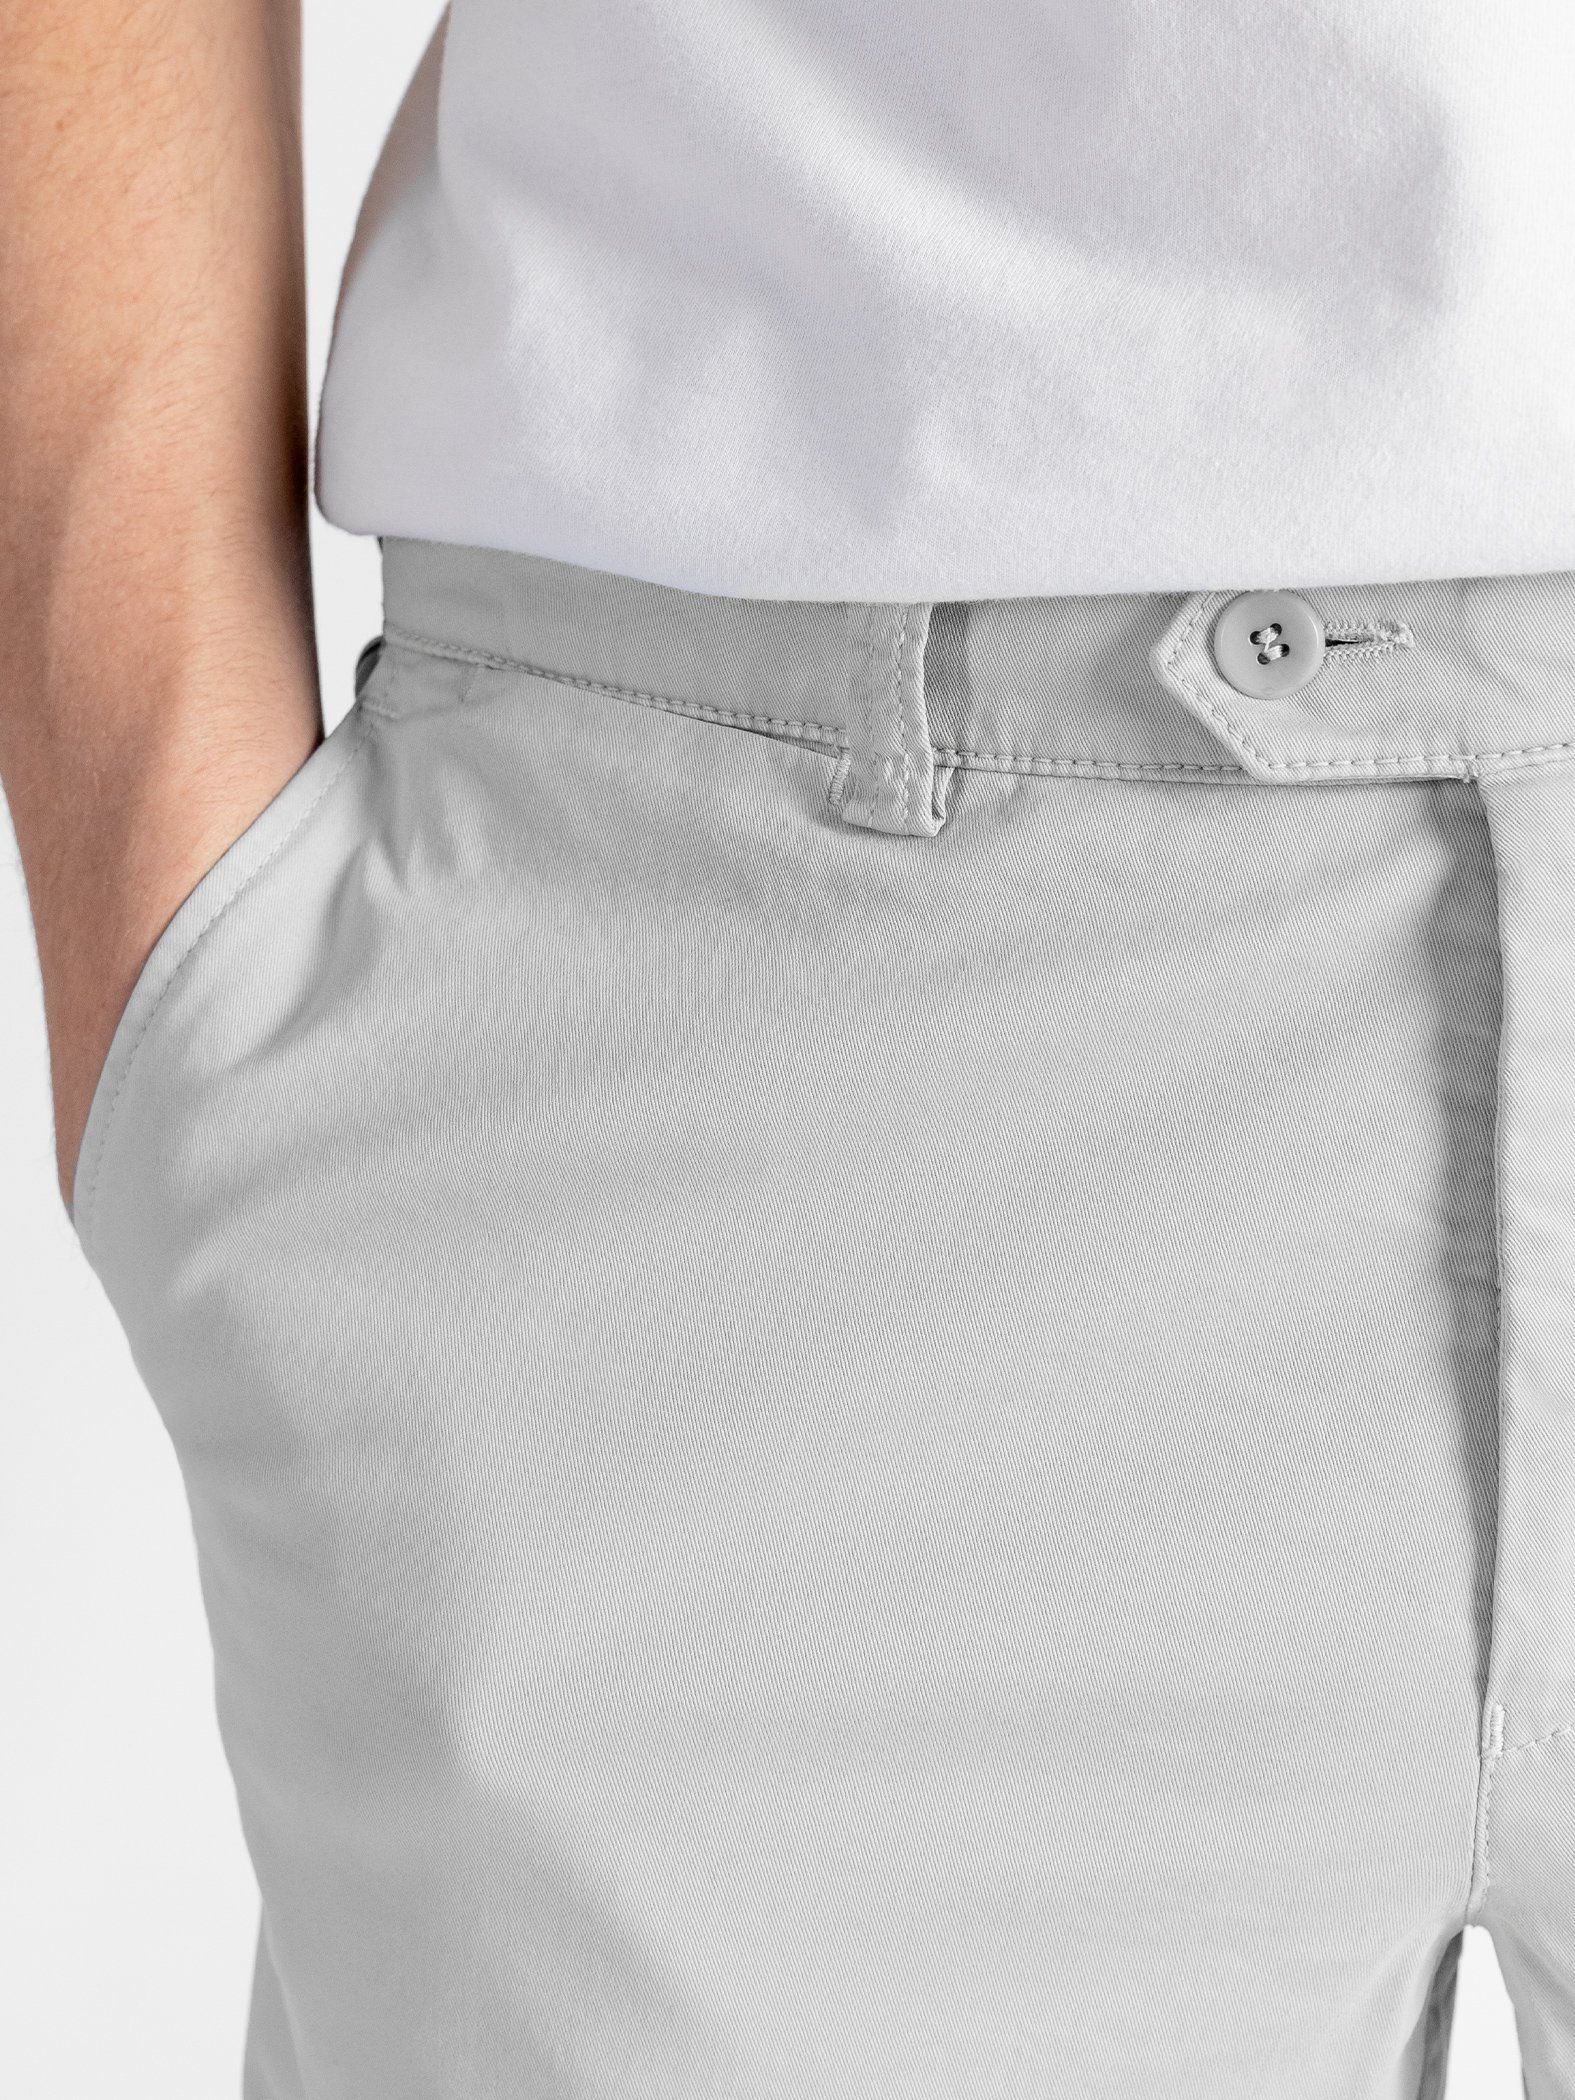 TwoMates Shorts Farbauswahl, GOTS-zertifiziert mit hellgrau Bund, elastischem Shorts